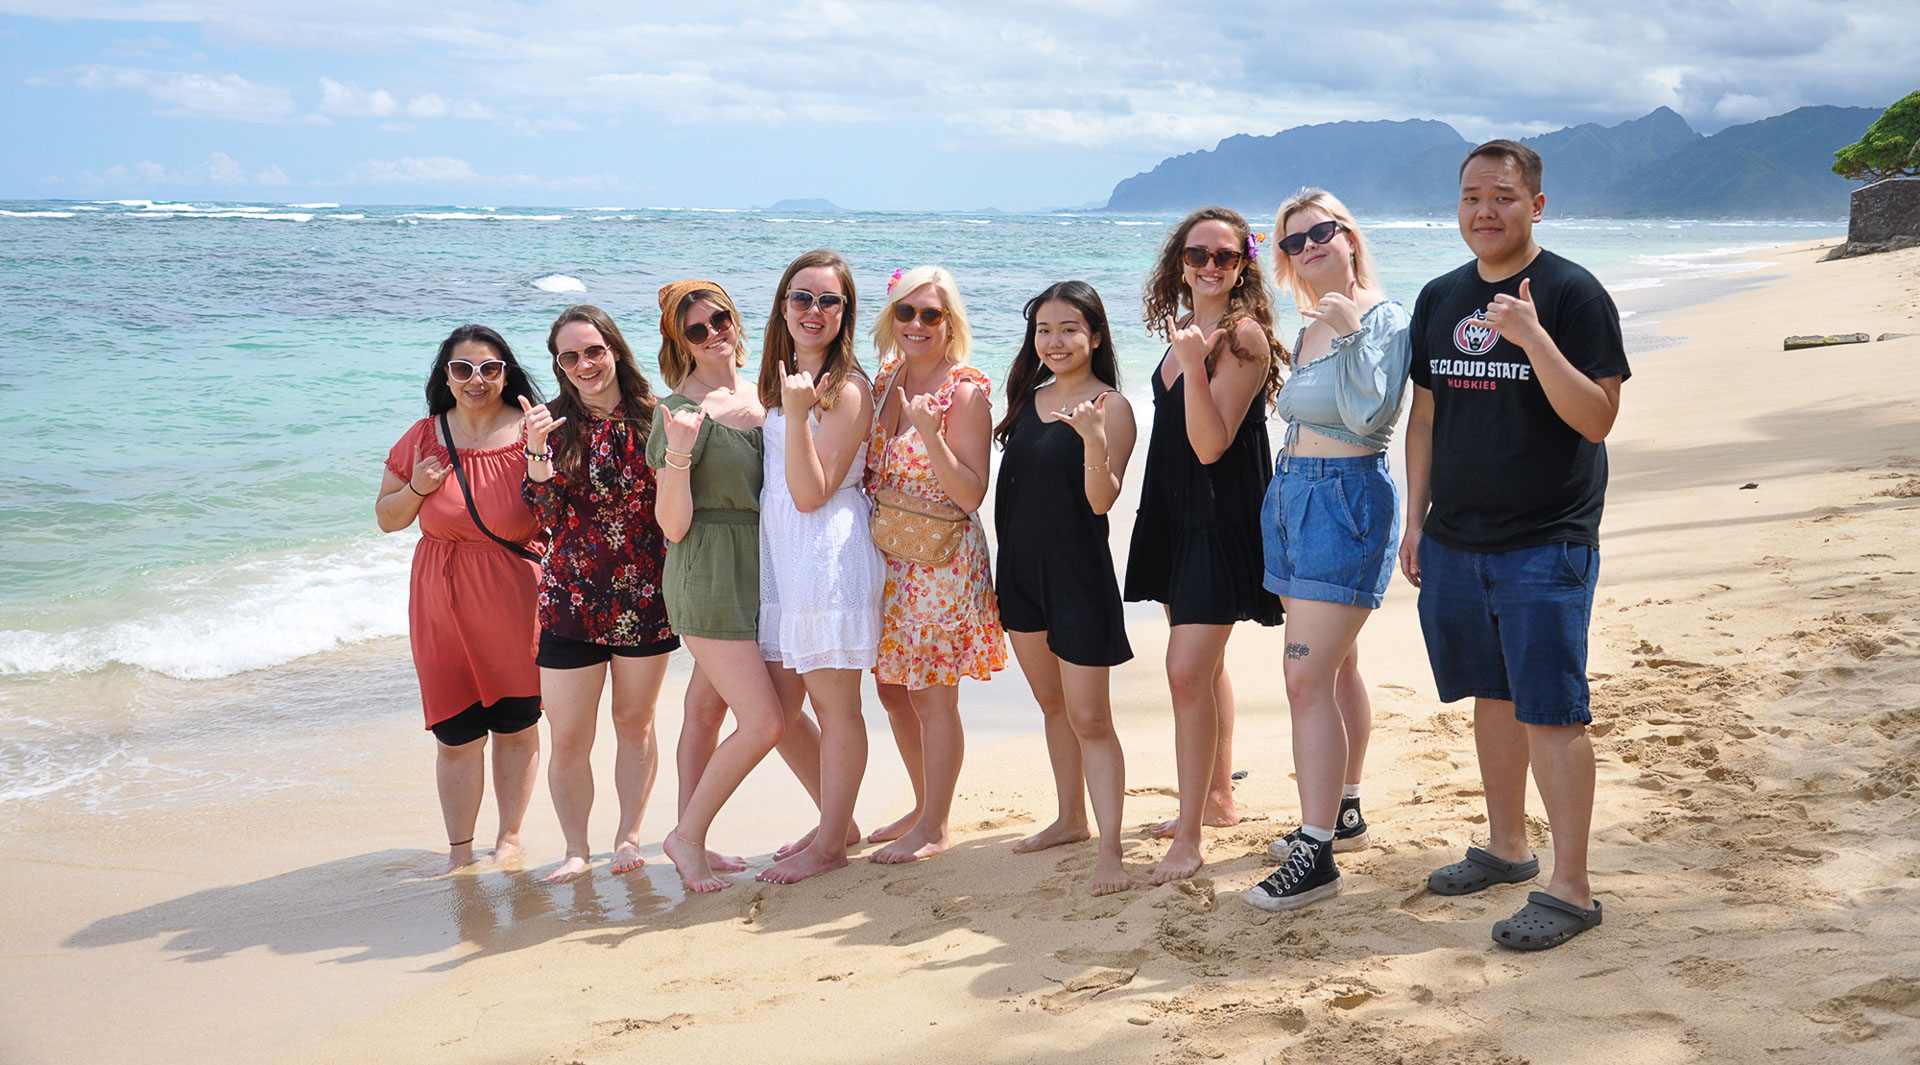 Students in Hawaii